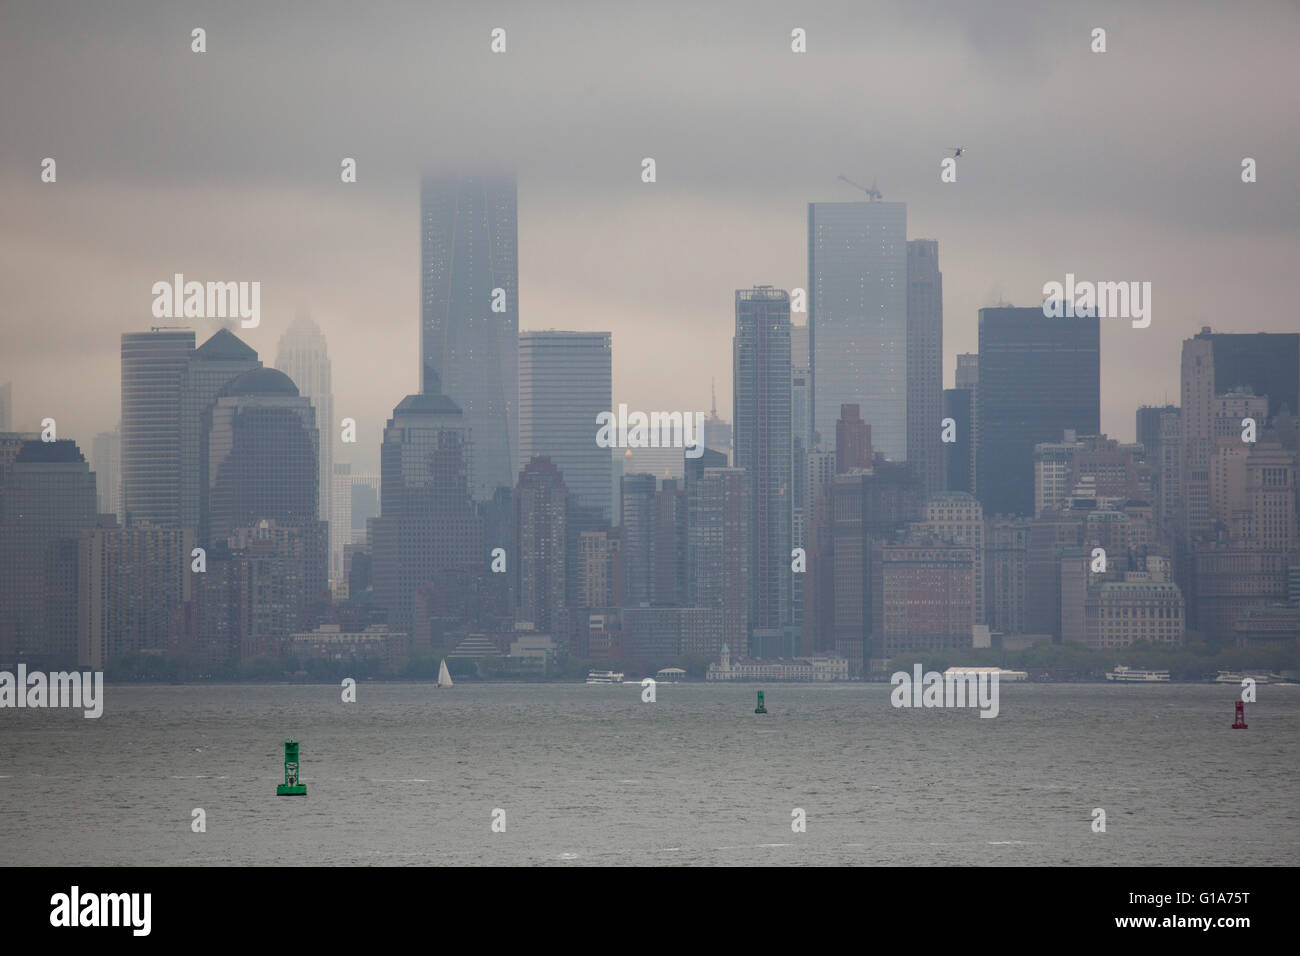 Gratte-ciel sur l'île de Manhattan, New York City, USA. La journée est couvert. Banque D'Images